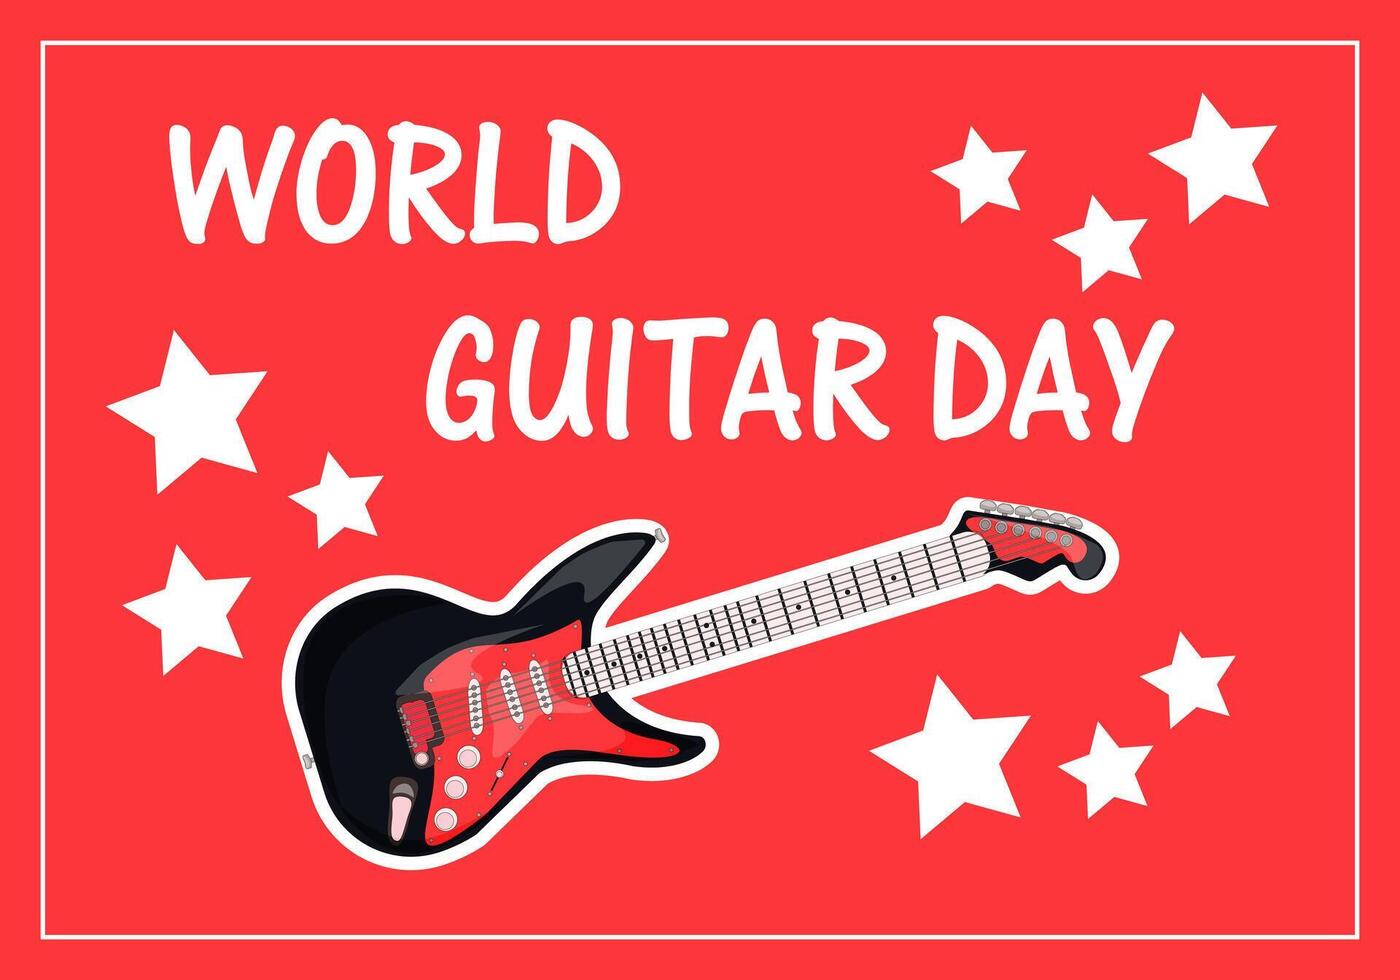 vettore illustrazione, striscione, vacanza rosso sfondo con bianca stelle - mondo chitarra giorno, testo e elettrico chitarra.